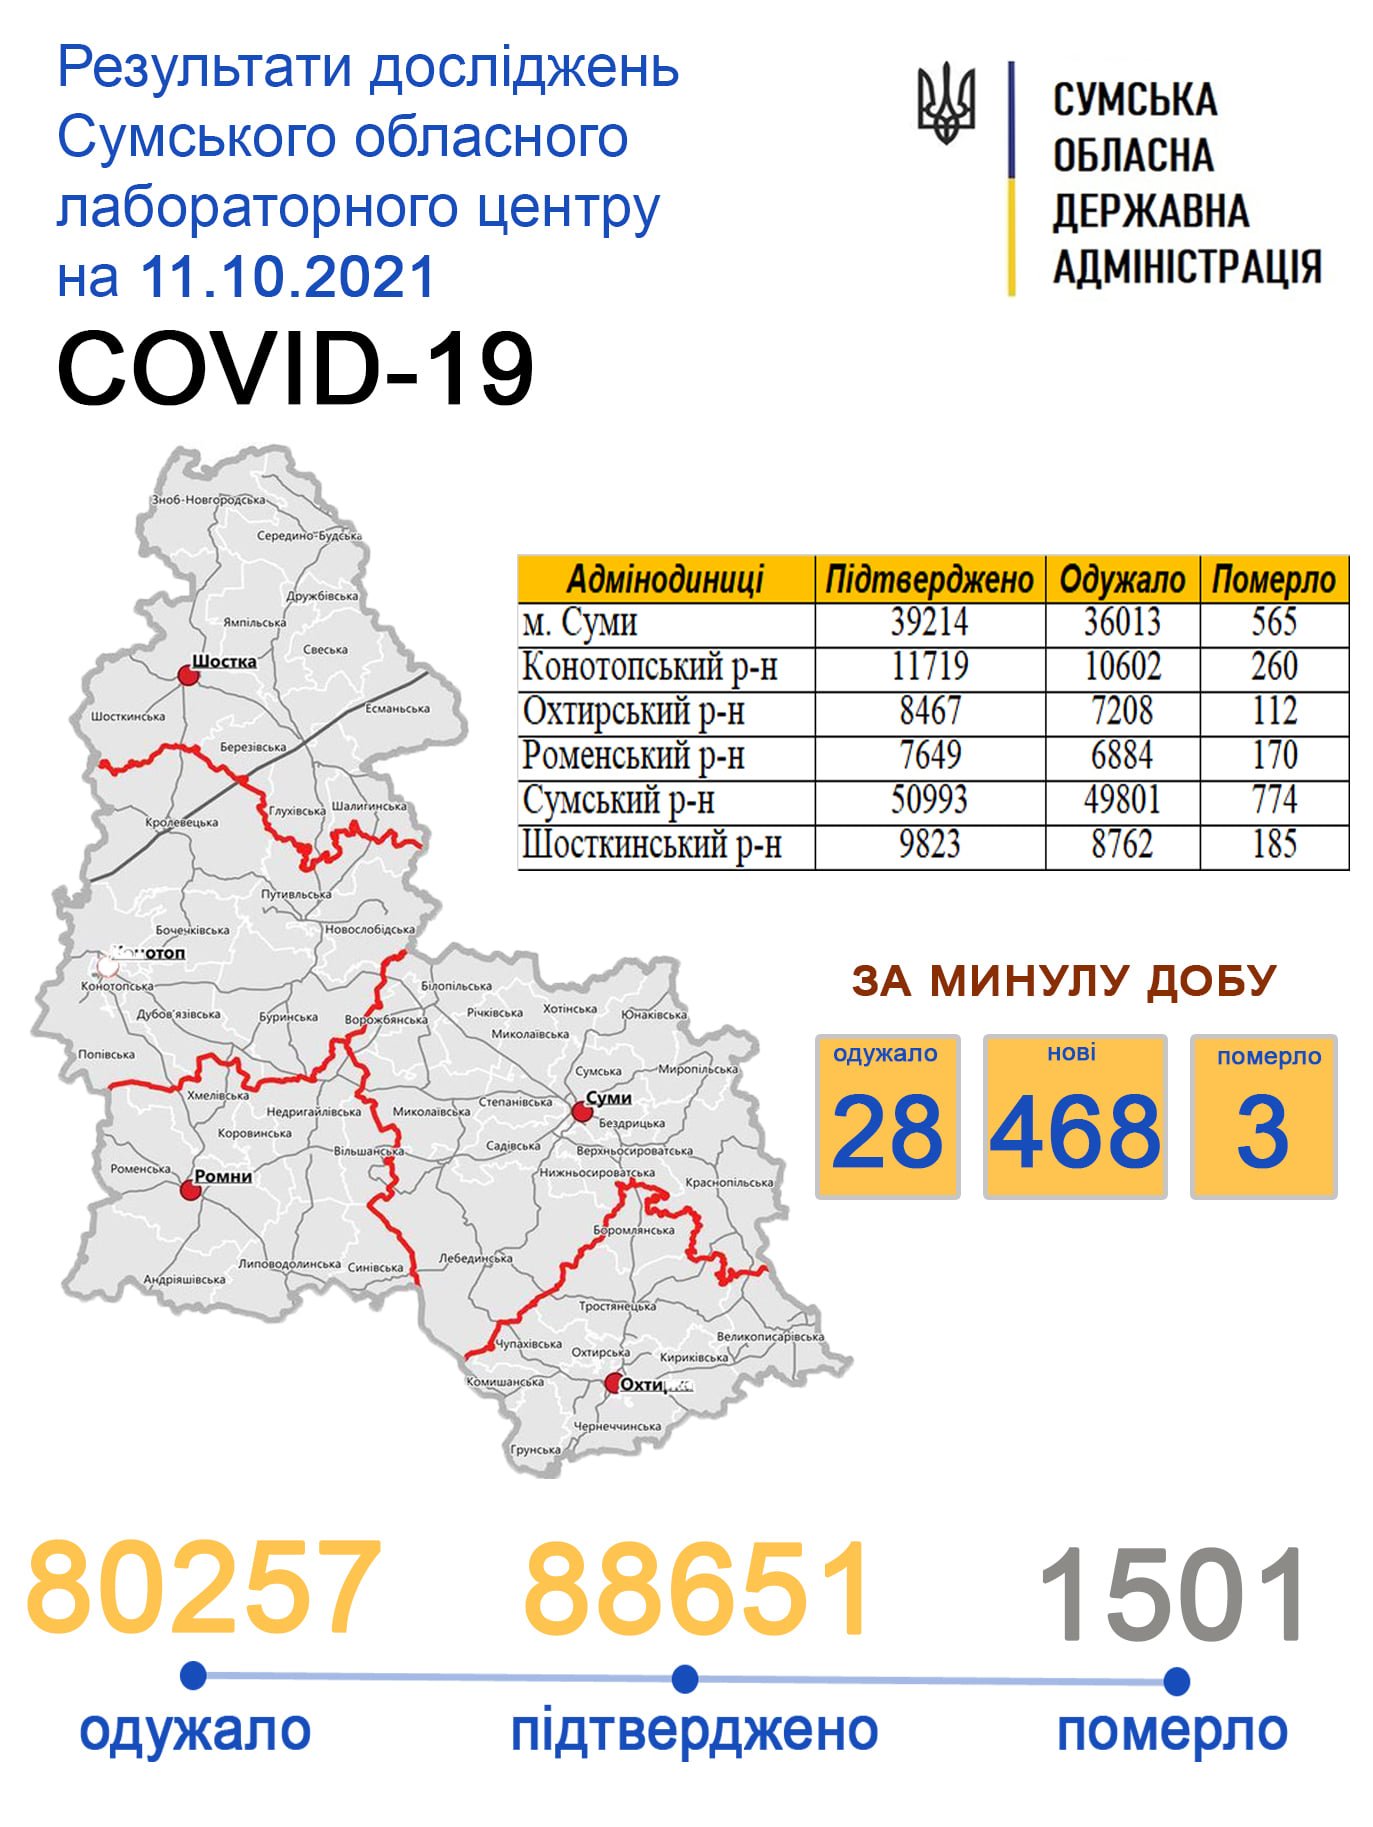   covid-19  468   